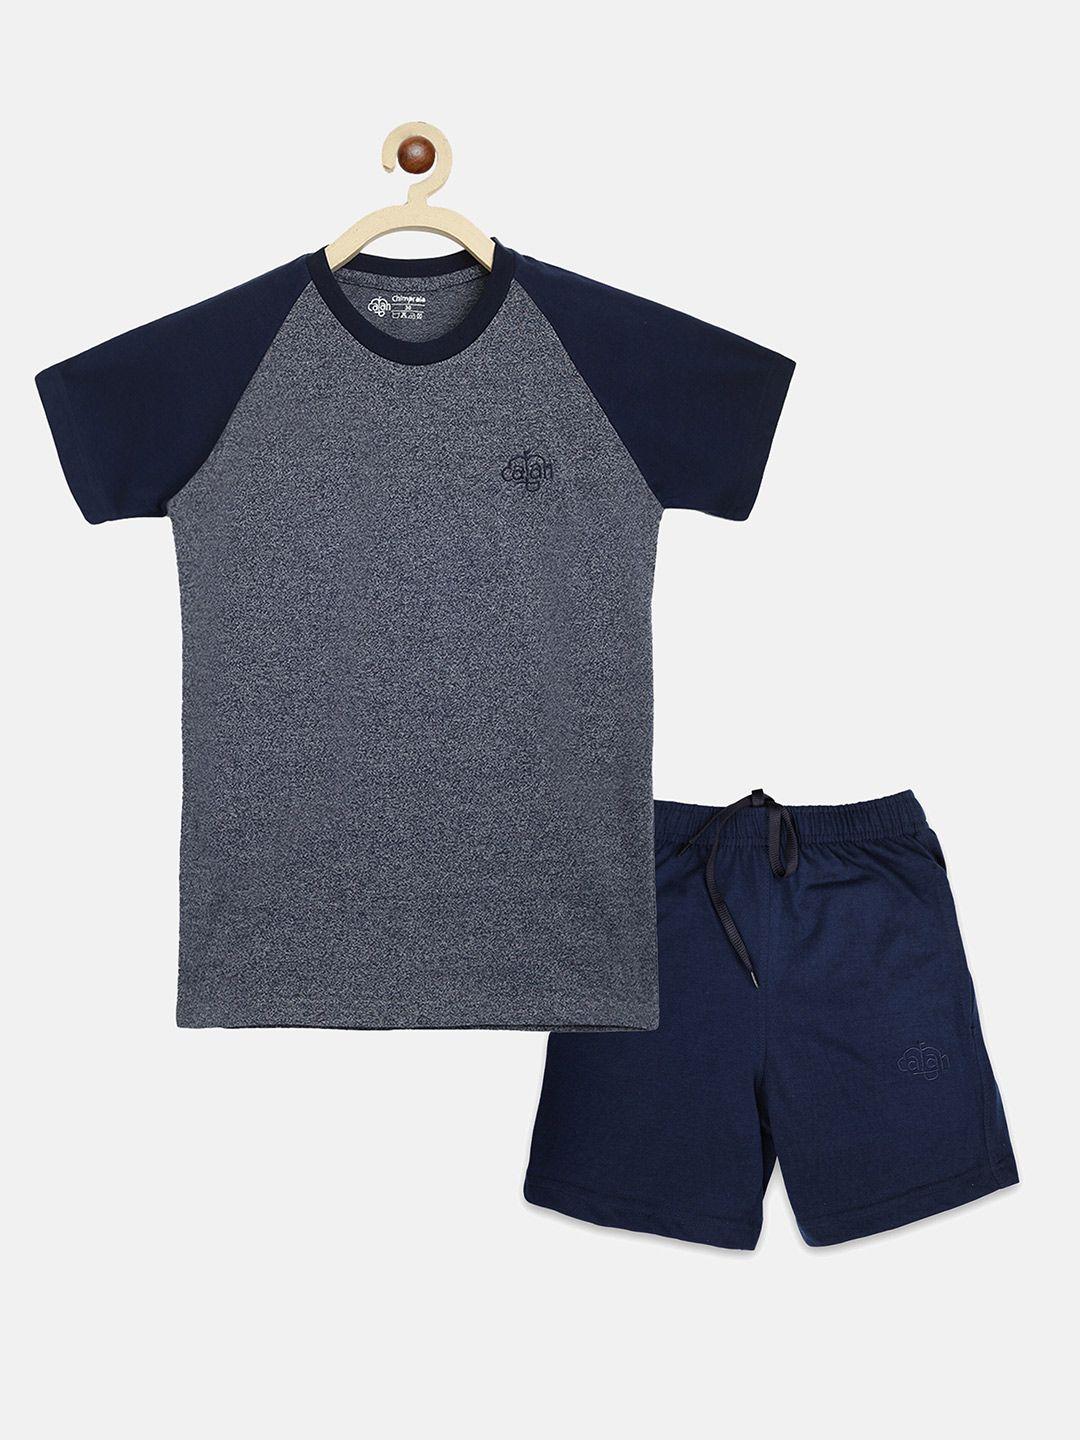 chimprala boys navy blue & grey colourblocked t-shirt with shorts